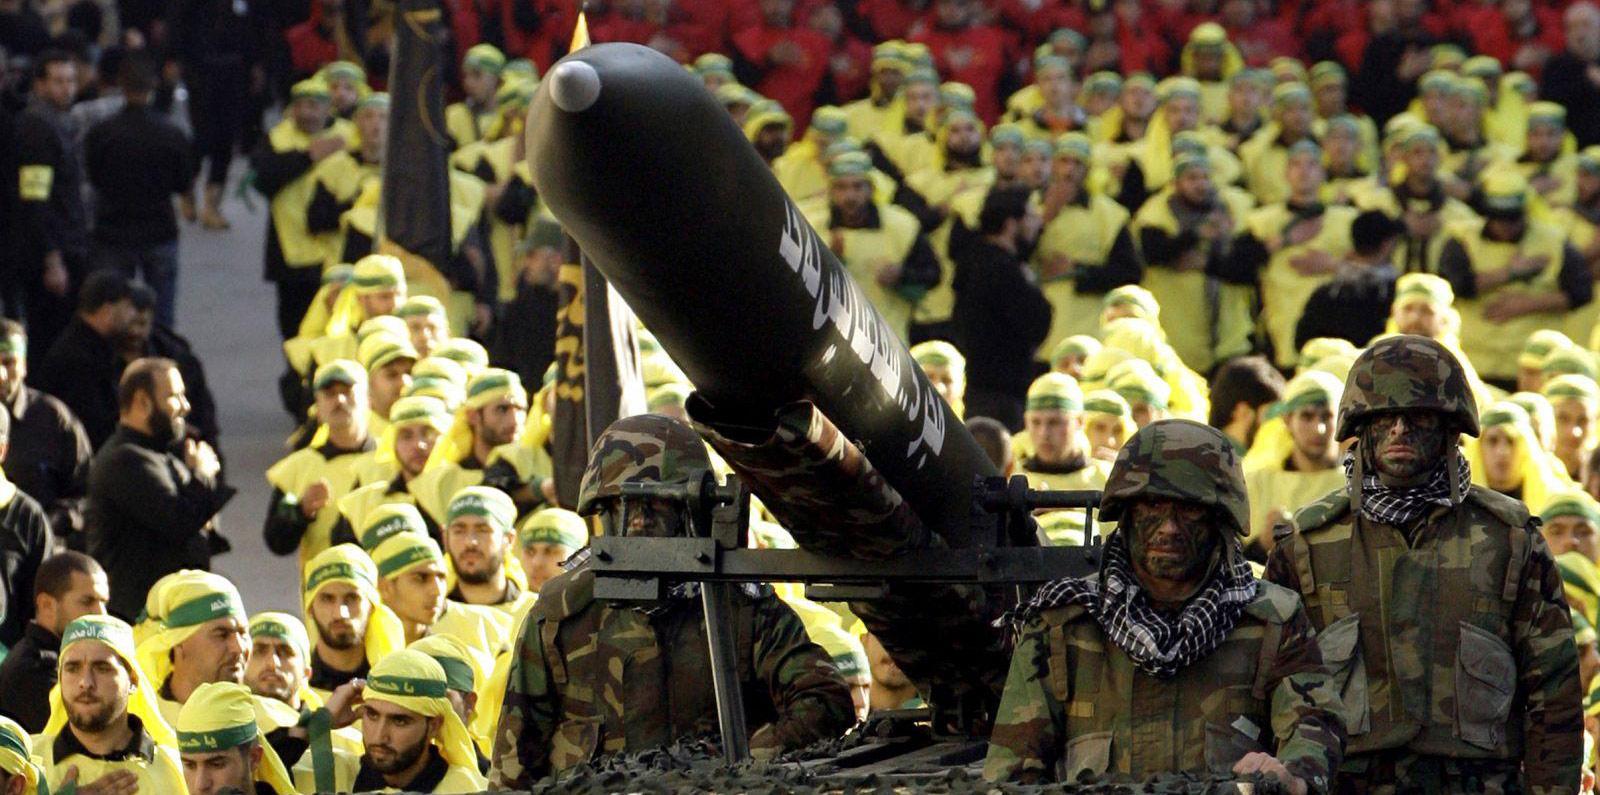 حزب الله المدعوم من إيران أعلن امتلاكه صواريخ متطورة قادرة على ضرب العمق الاسرائيلي